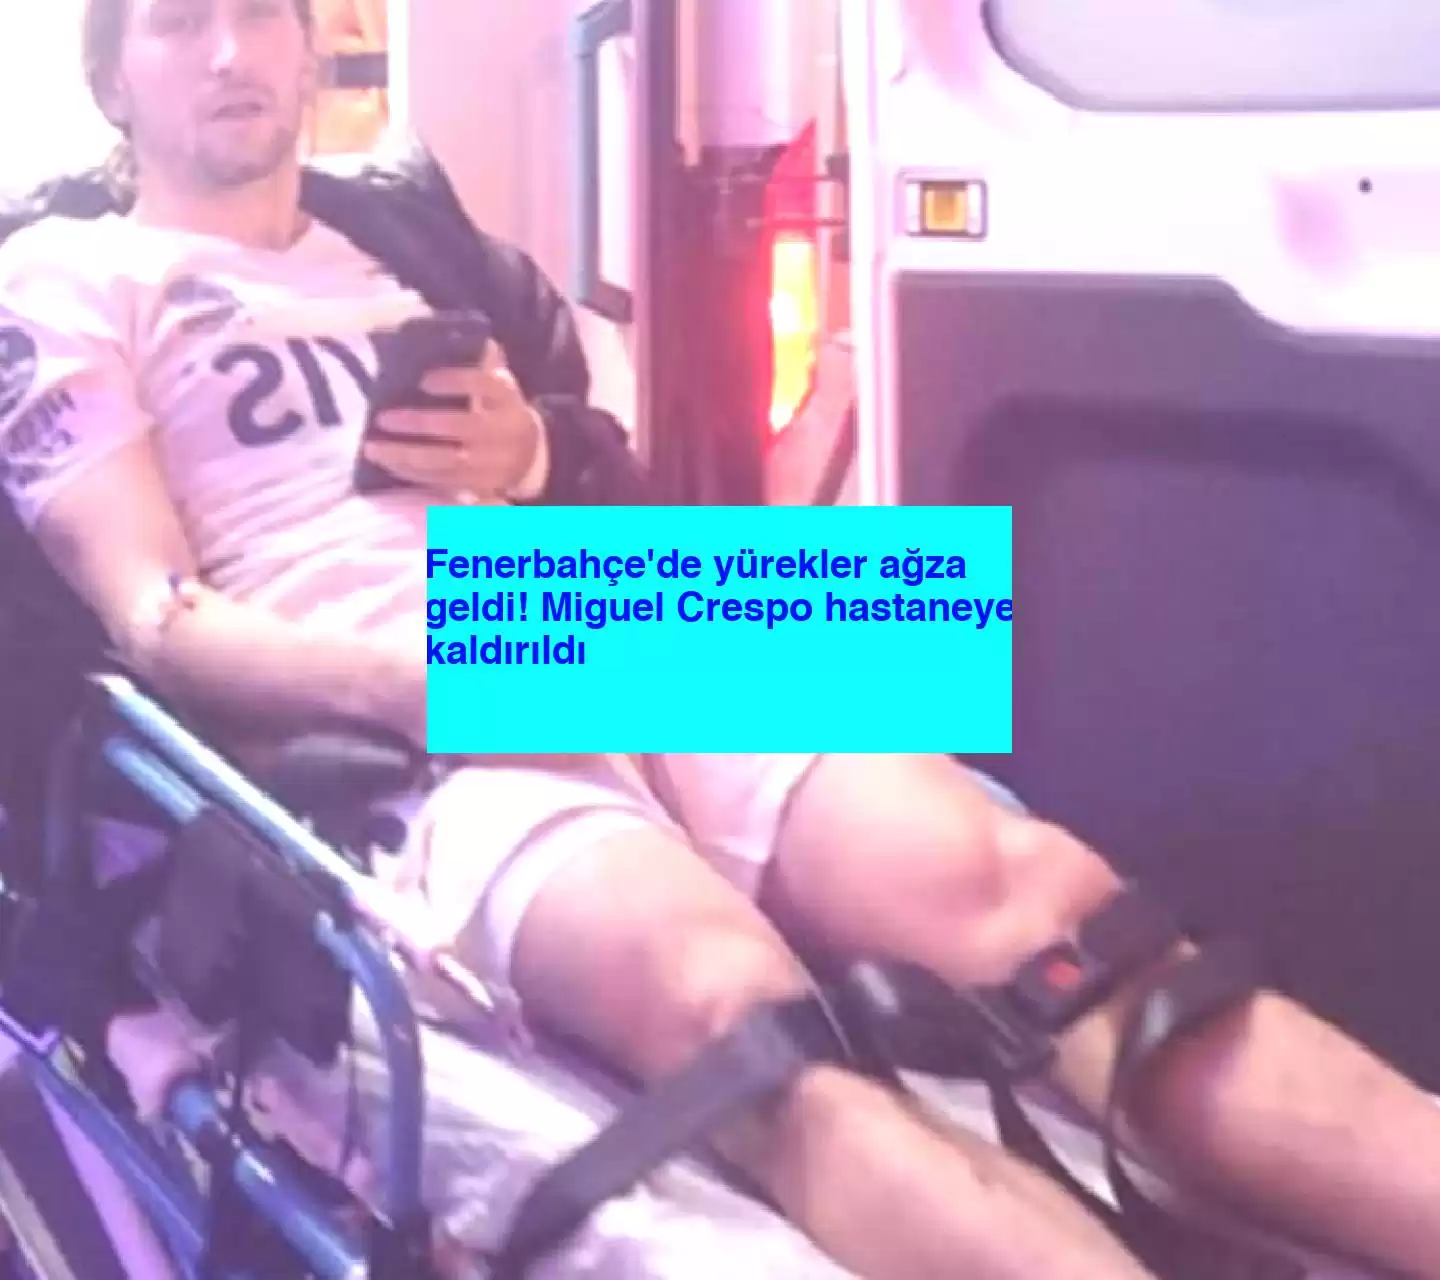 Fenerbahçe’de yürekler ağza geldi! Miguel Crespo hastaneye kaldırıldı